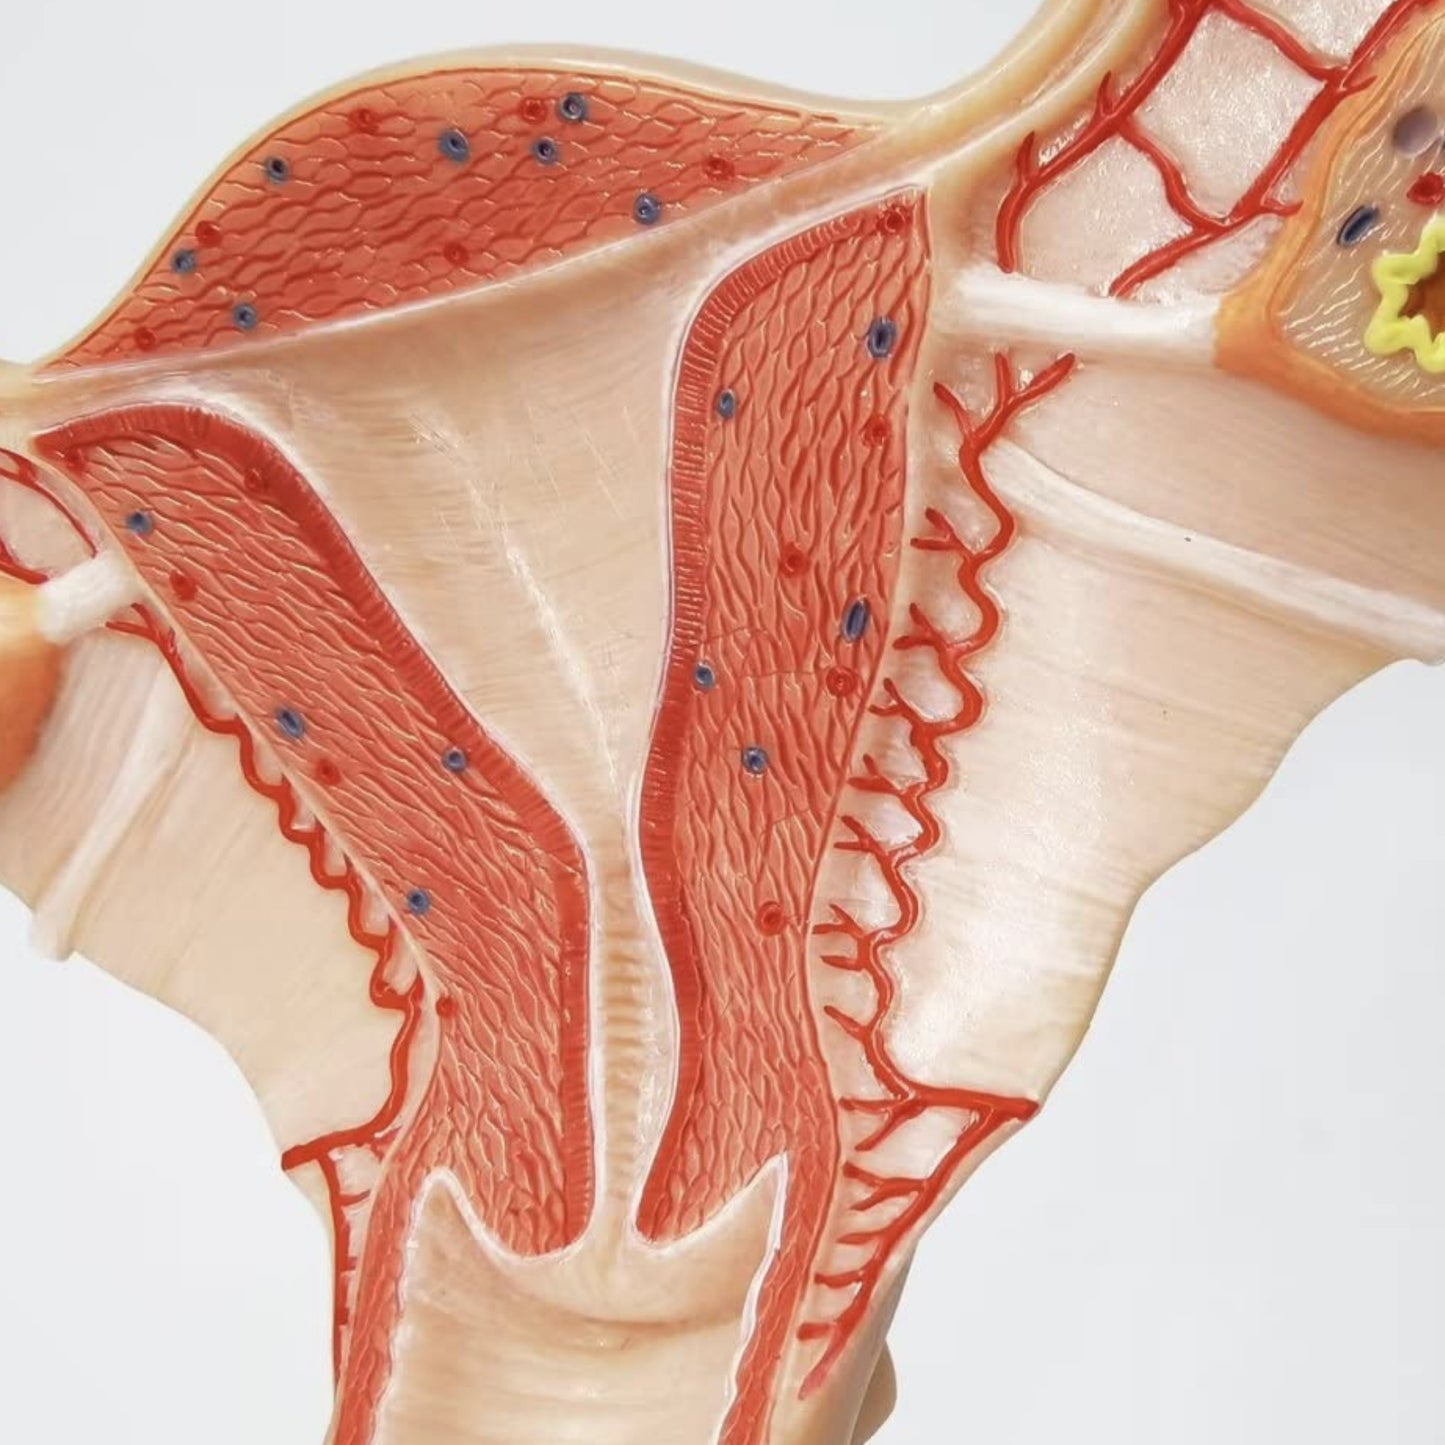 Anatomisk model af kvindens indre kønsorganer